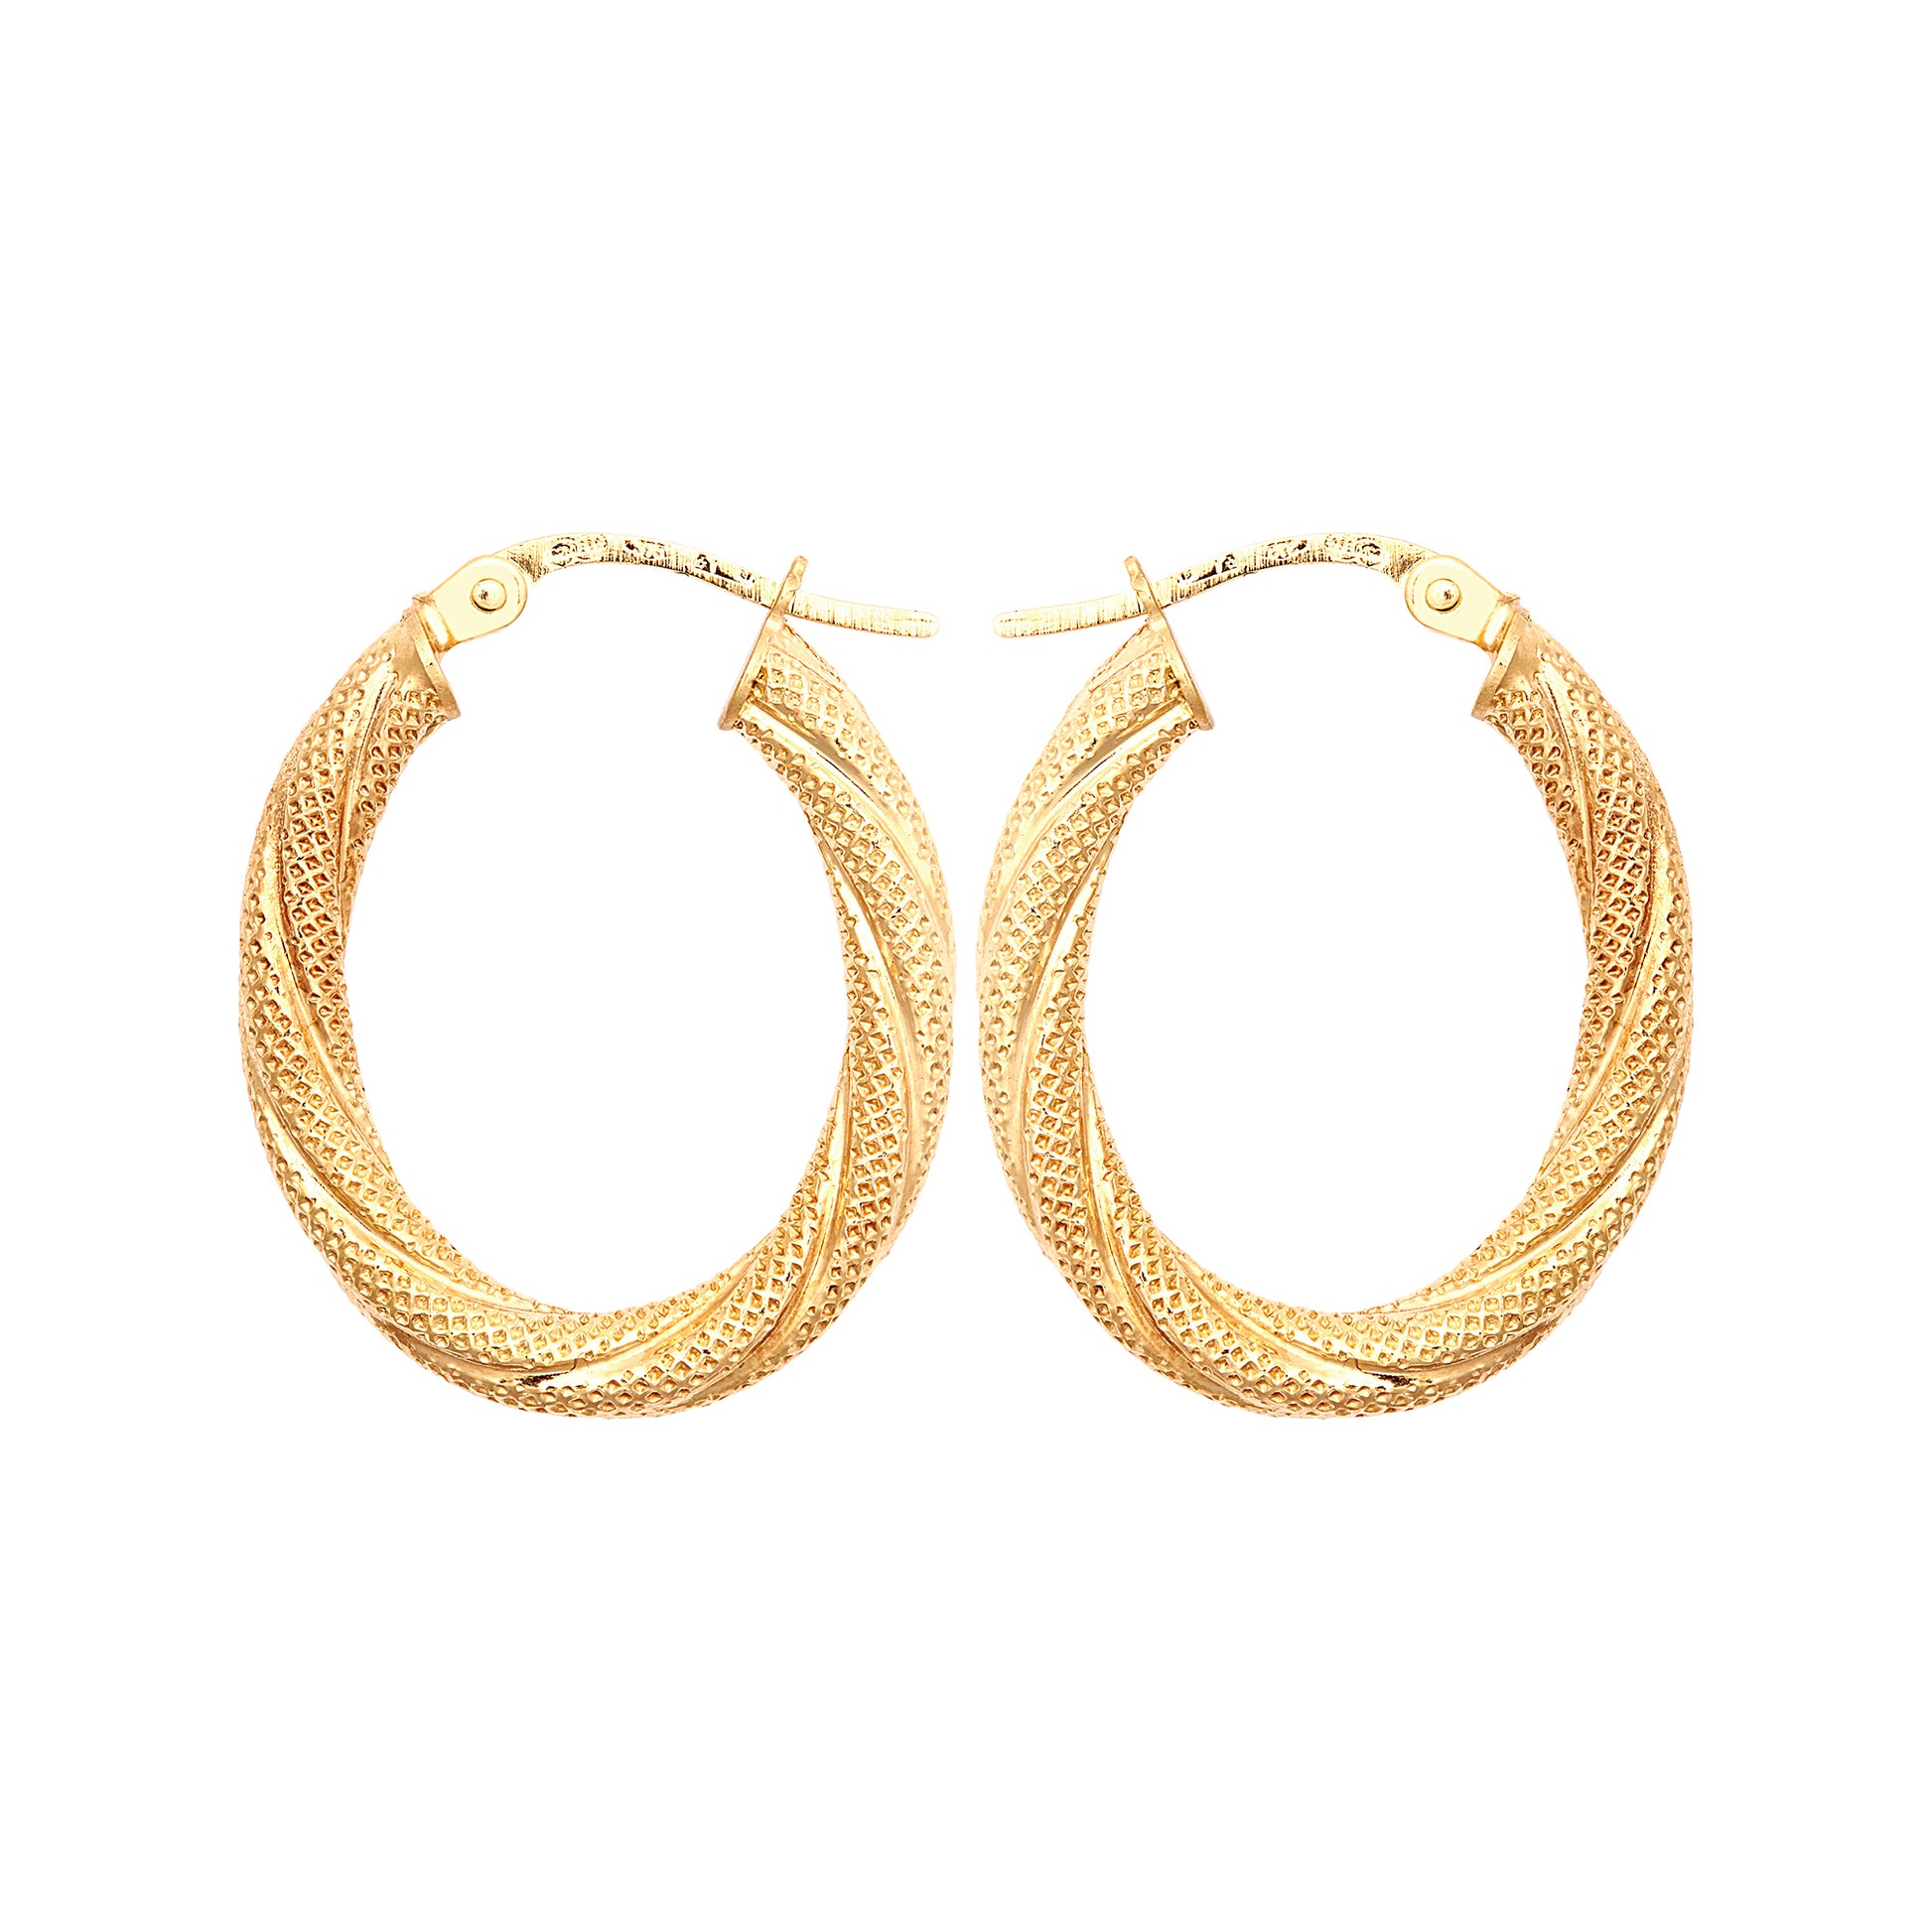 9ct Gold  Snake Skin Mesh Twist Oval Hoop 2.5mm Creole Earrings - JER815